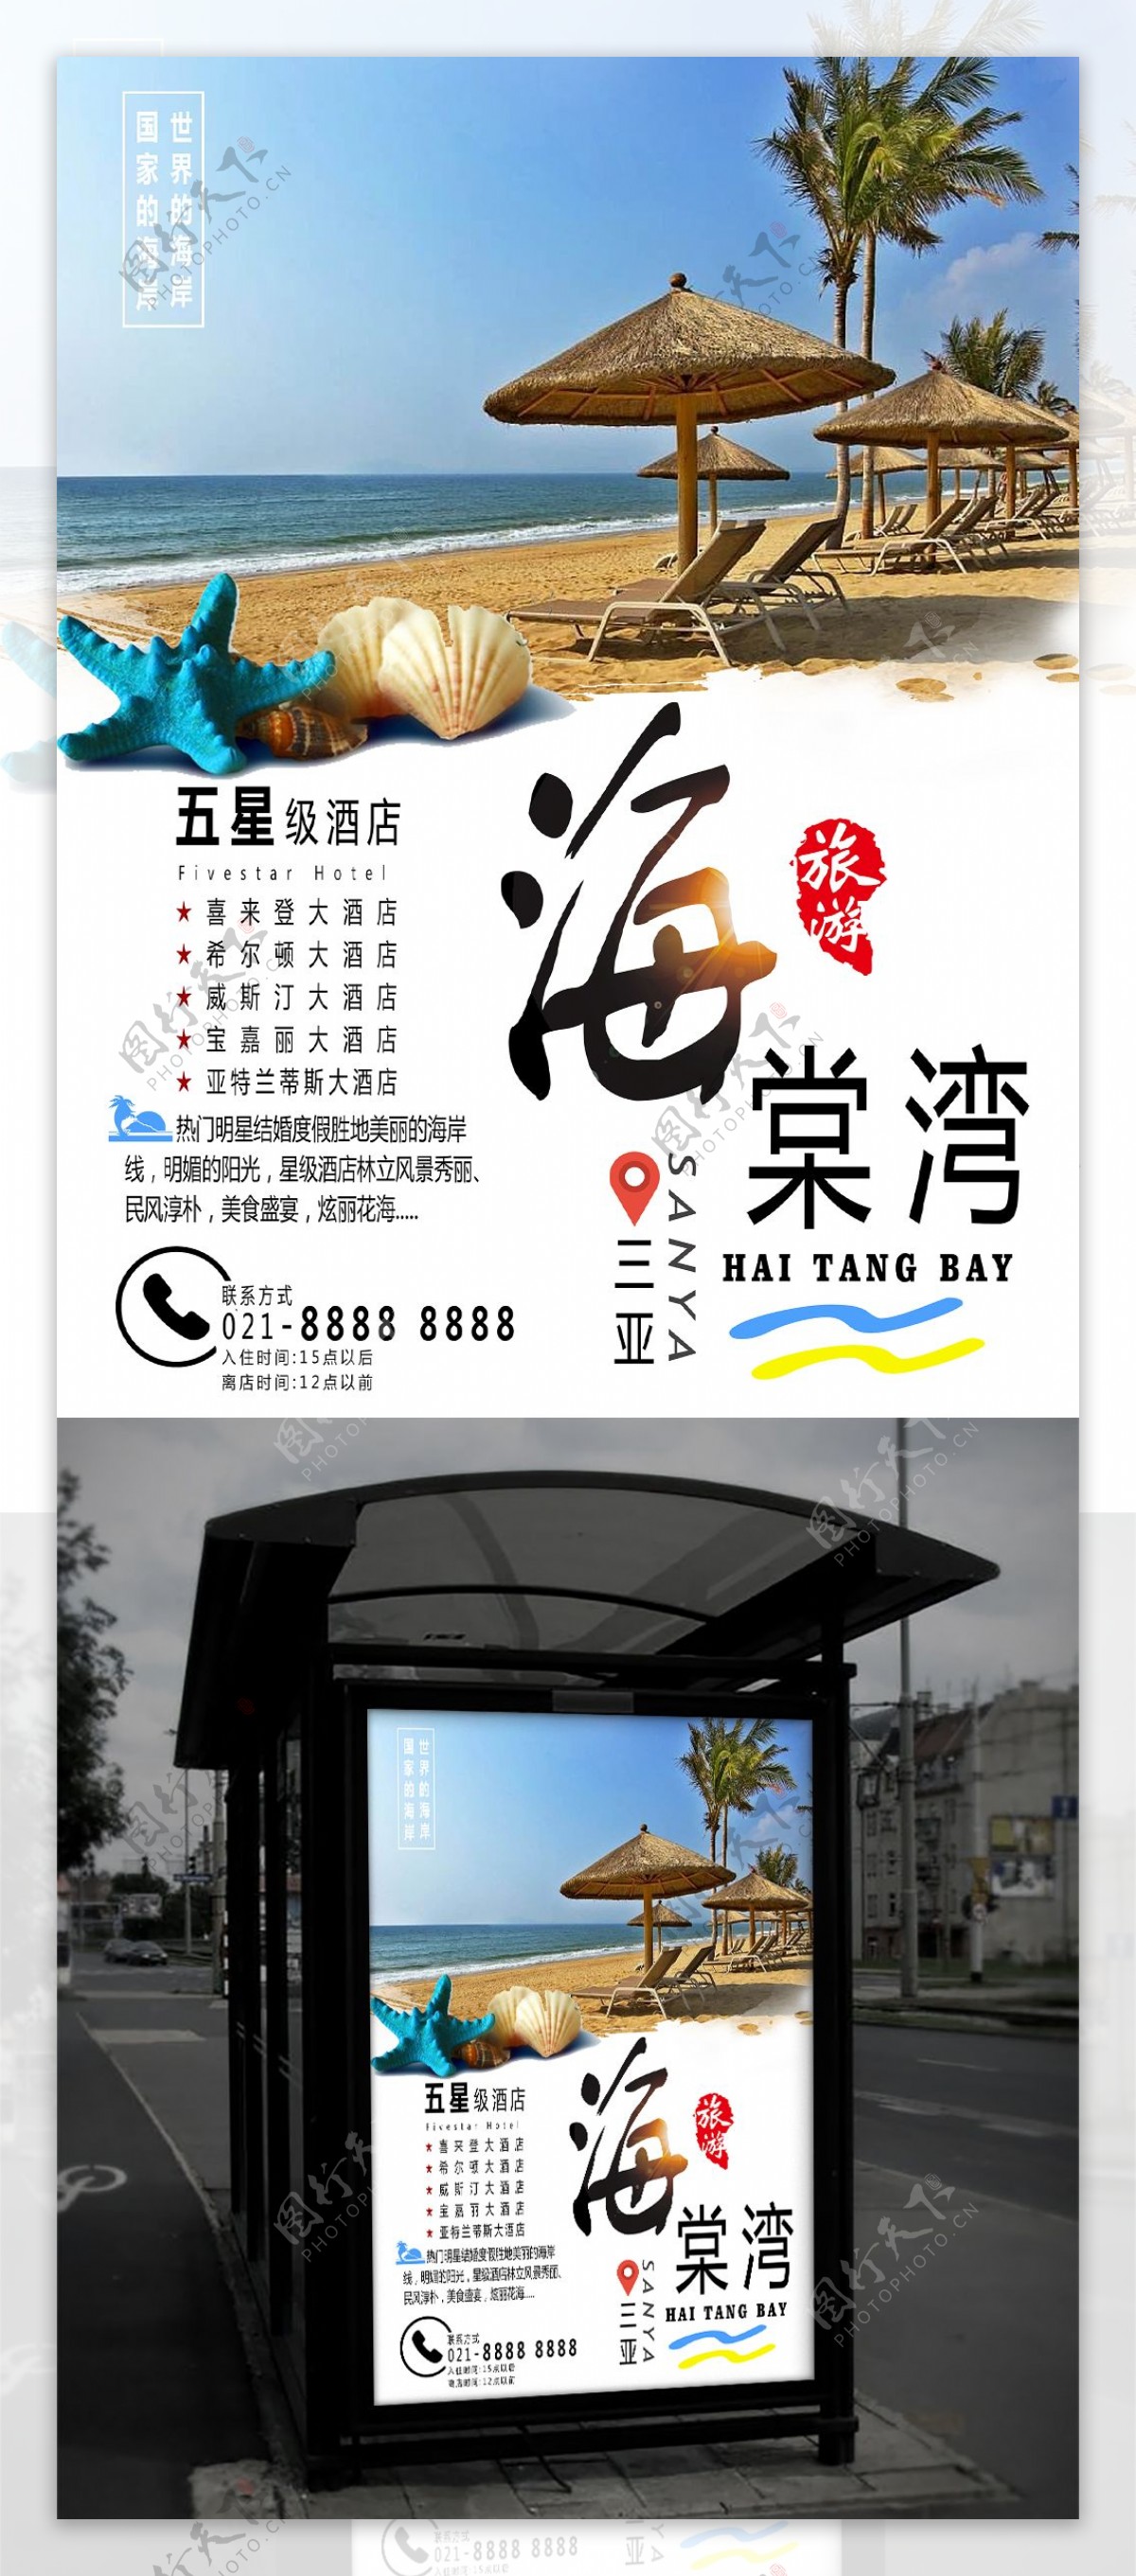 清新蓝白三亚海棠湾旅游海报